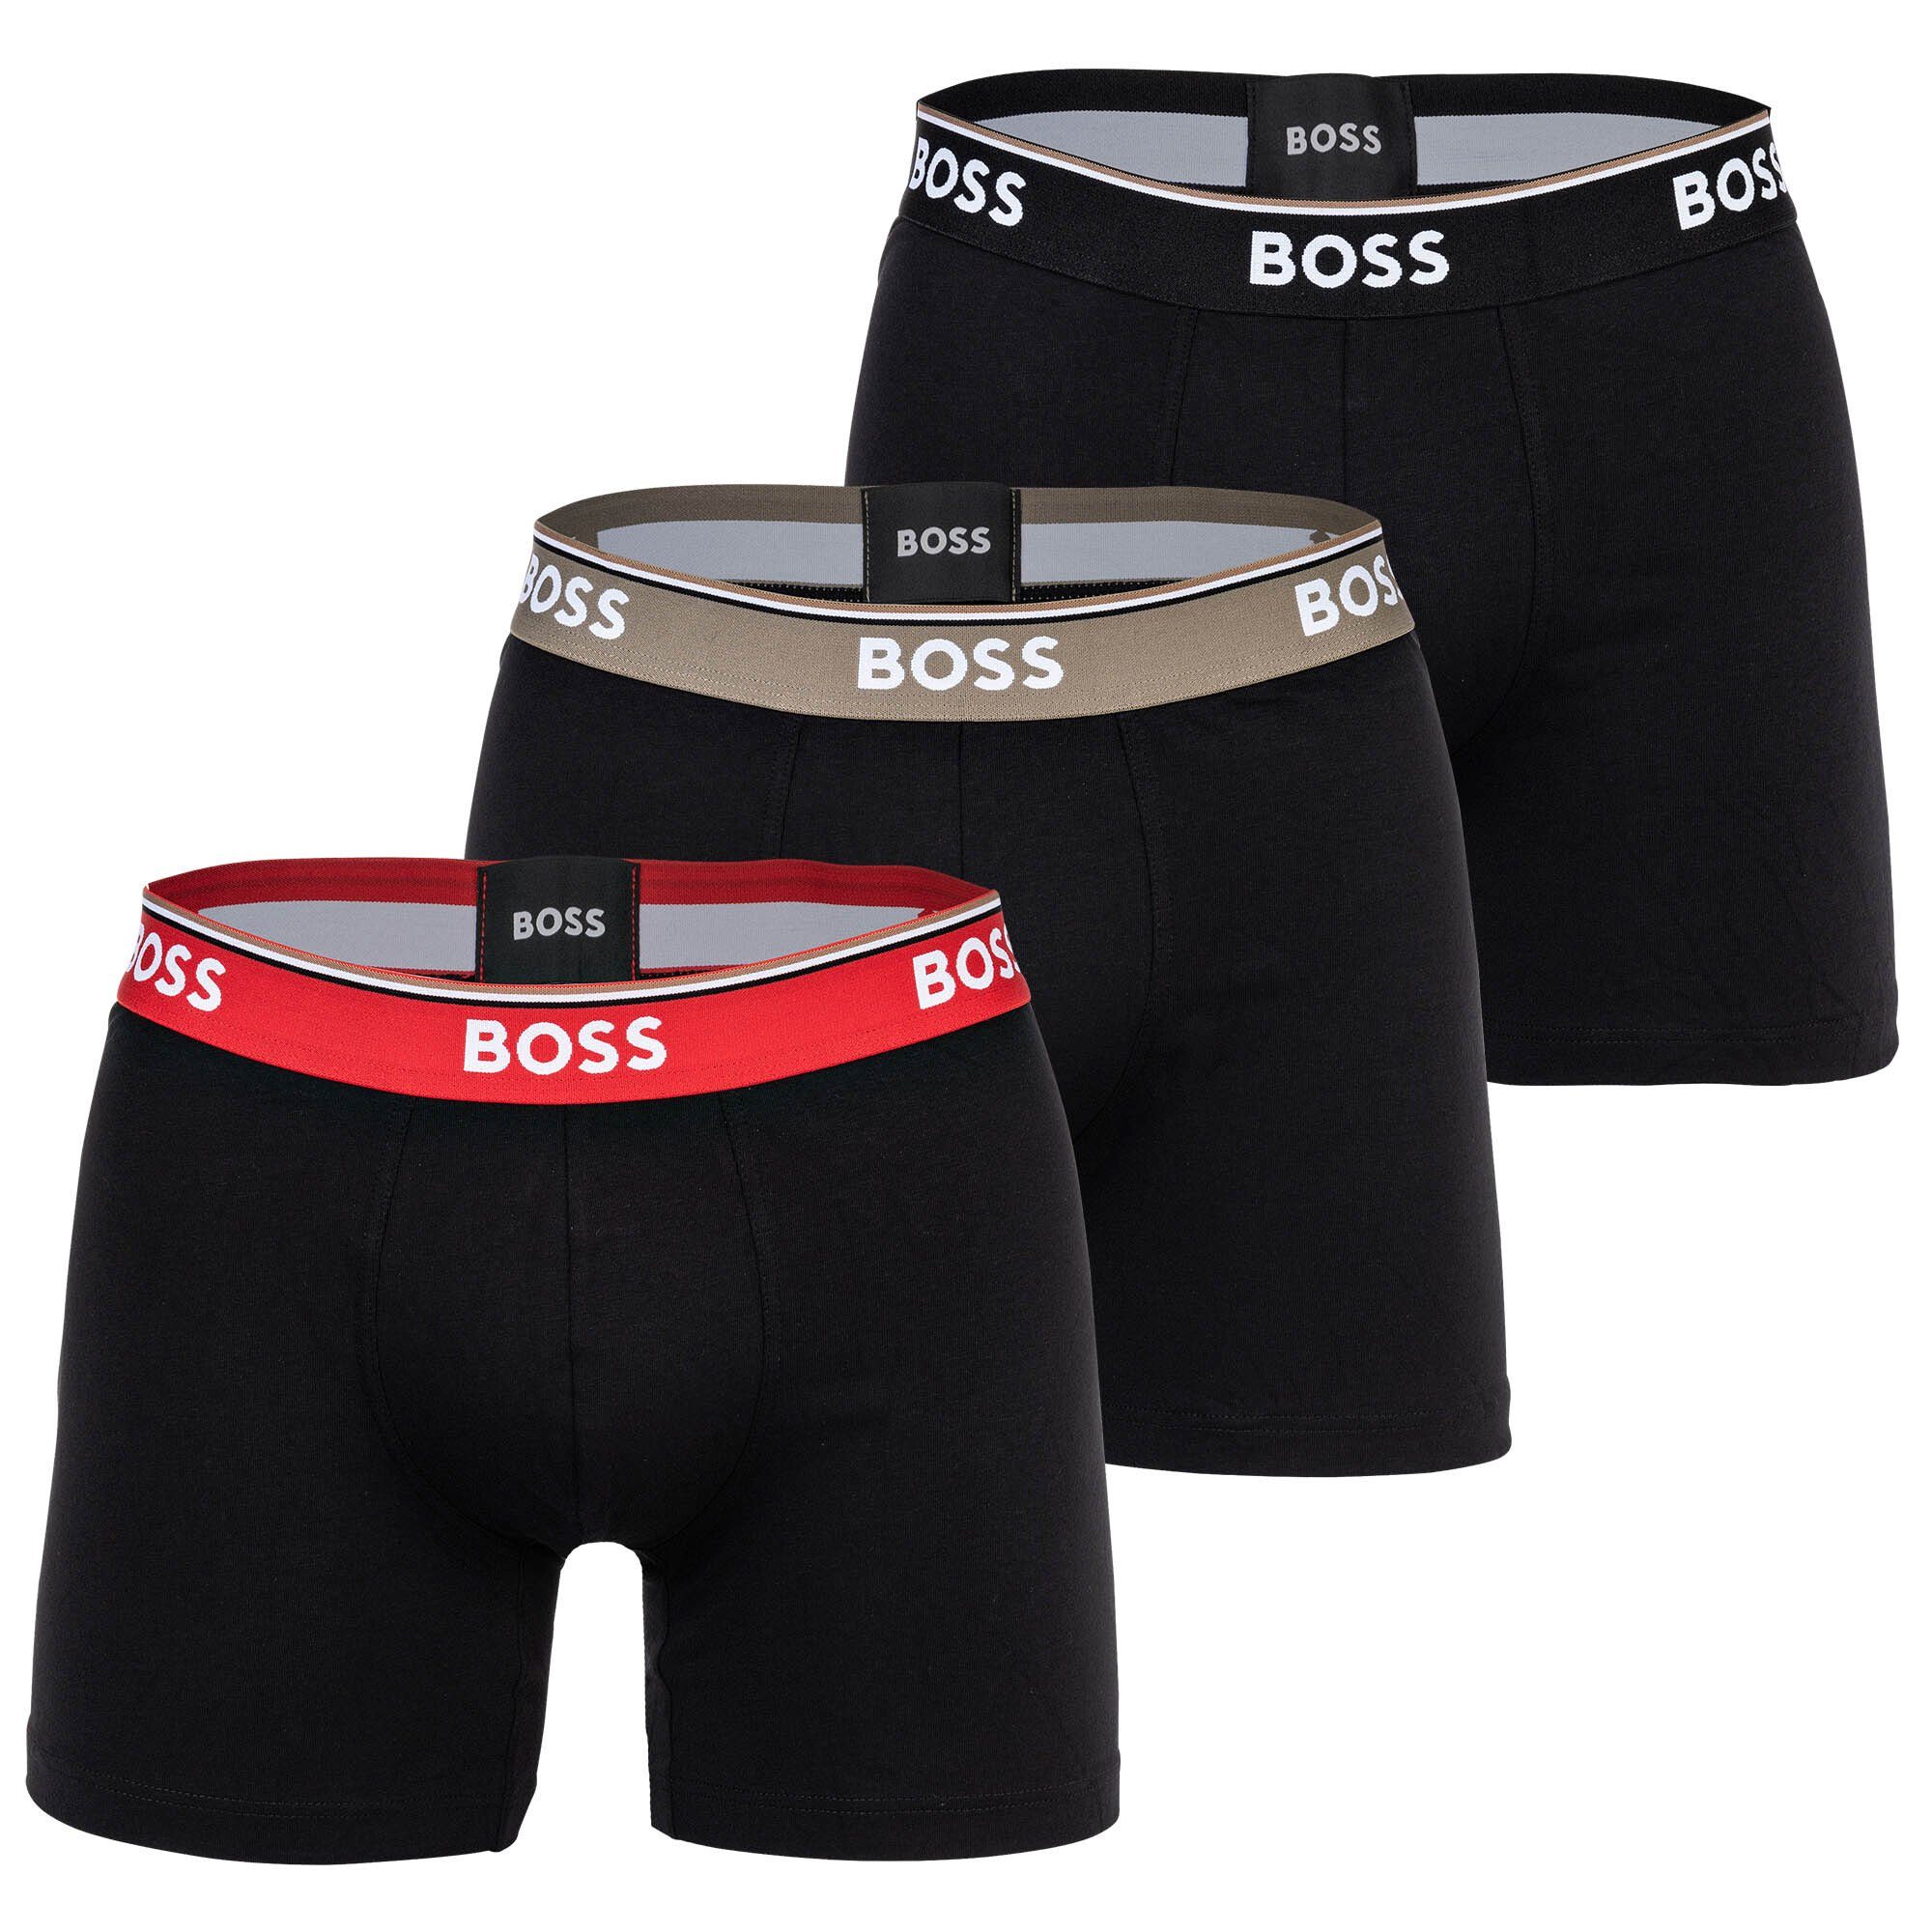 BOSS Boxer Herren Boxershorts, 3er Pack - Power Schwarz/Grün/Rot